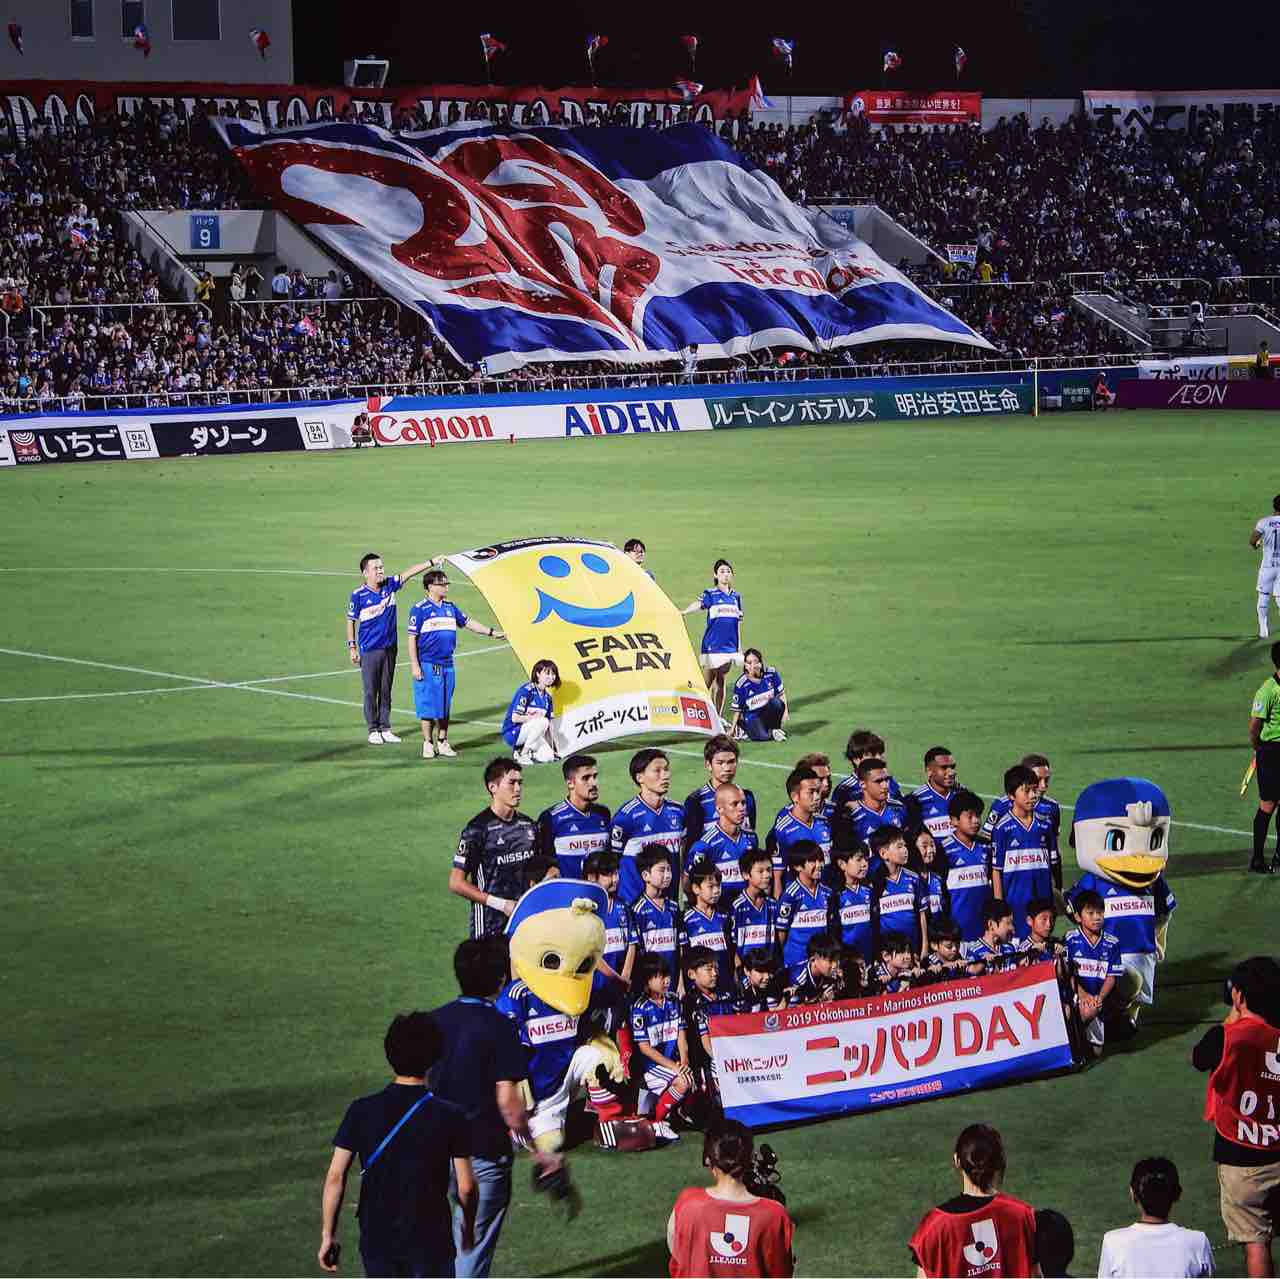 喜ぶティーラトンと祝福する選手たち マリノスの強さの理由がみえた 第25節 ガンバ大阪 トリコロールの旗のもと Dice Kのblog